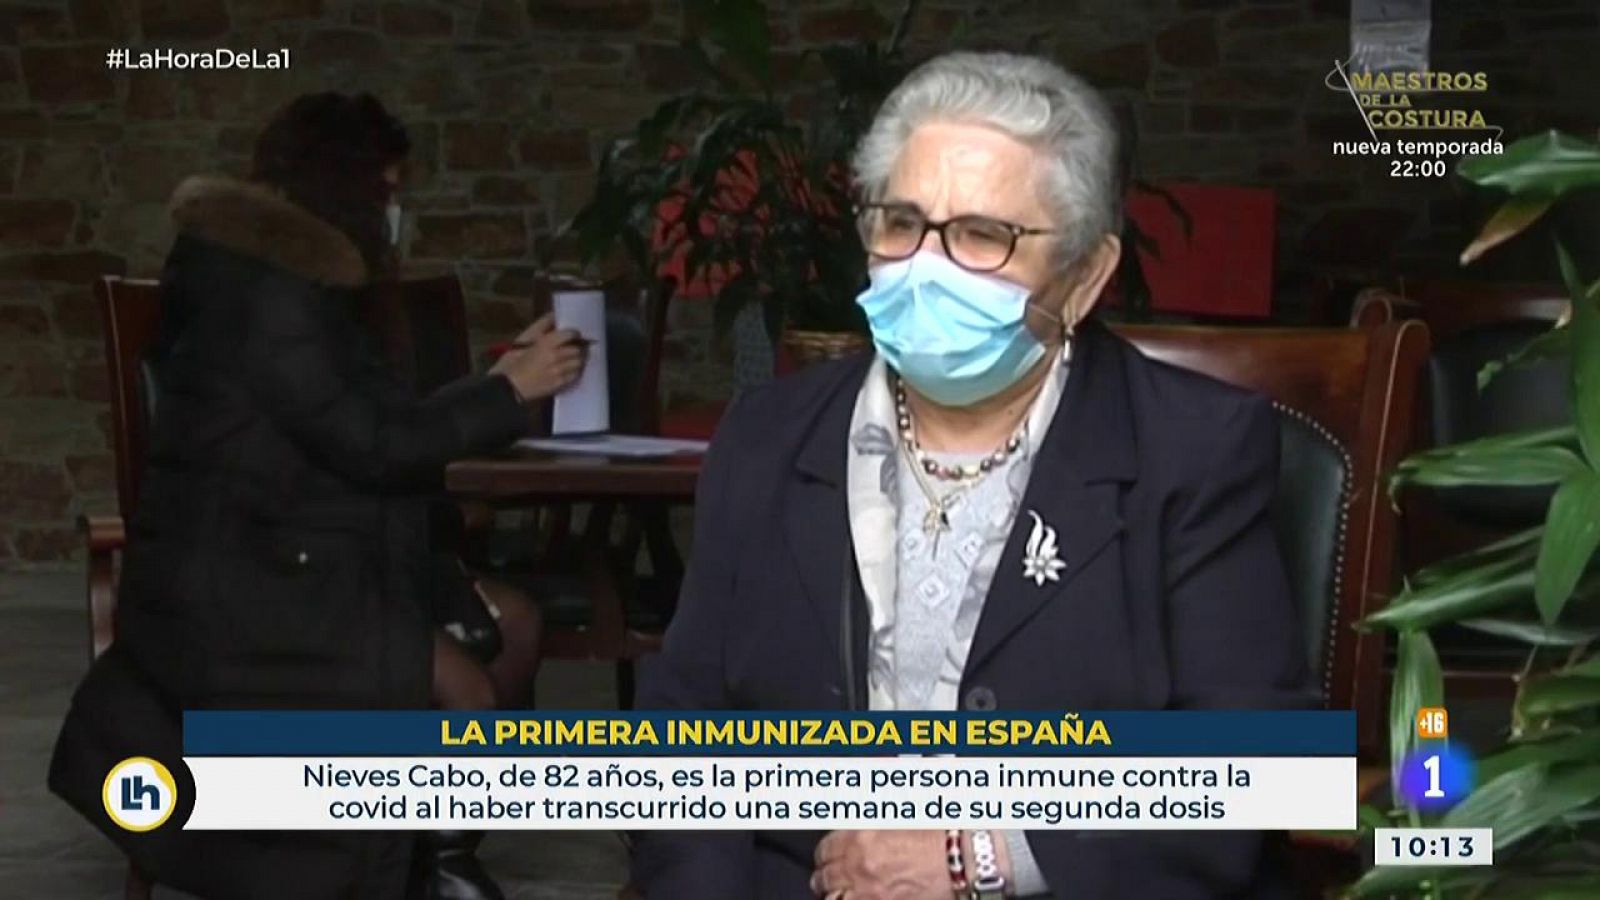 Primera persona inmune al coronavirus en España